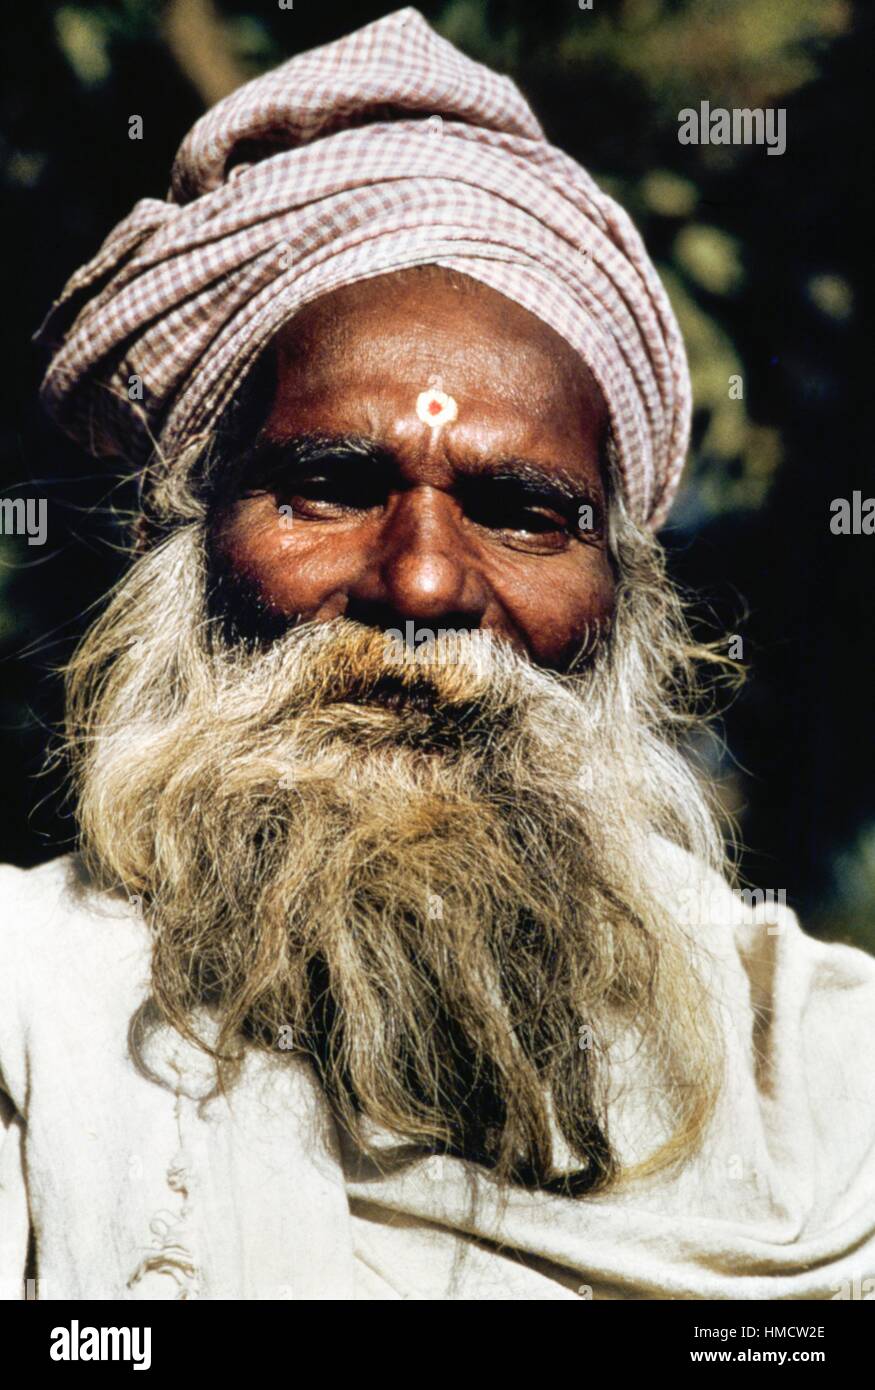 Uomo vecchio con la barba e il turbante, chandigarh, India. Foto Stock